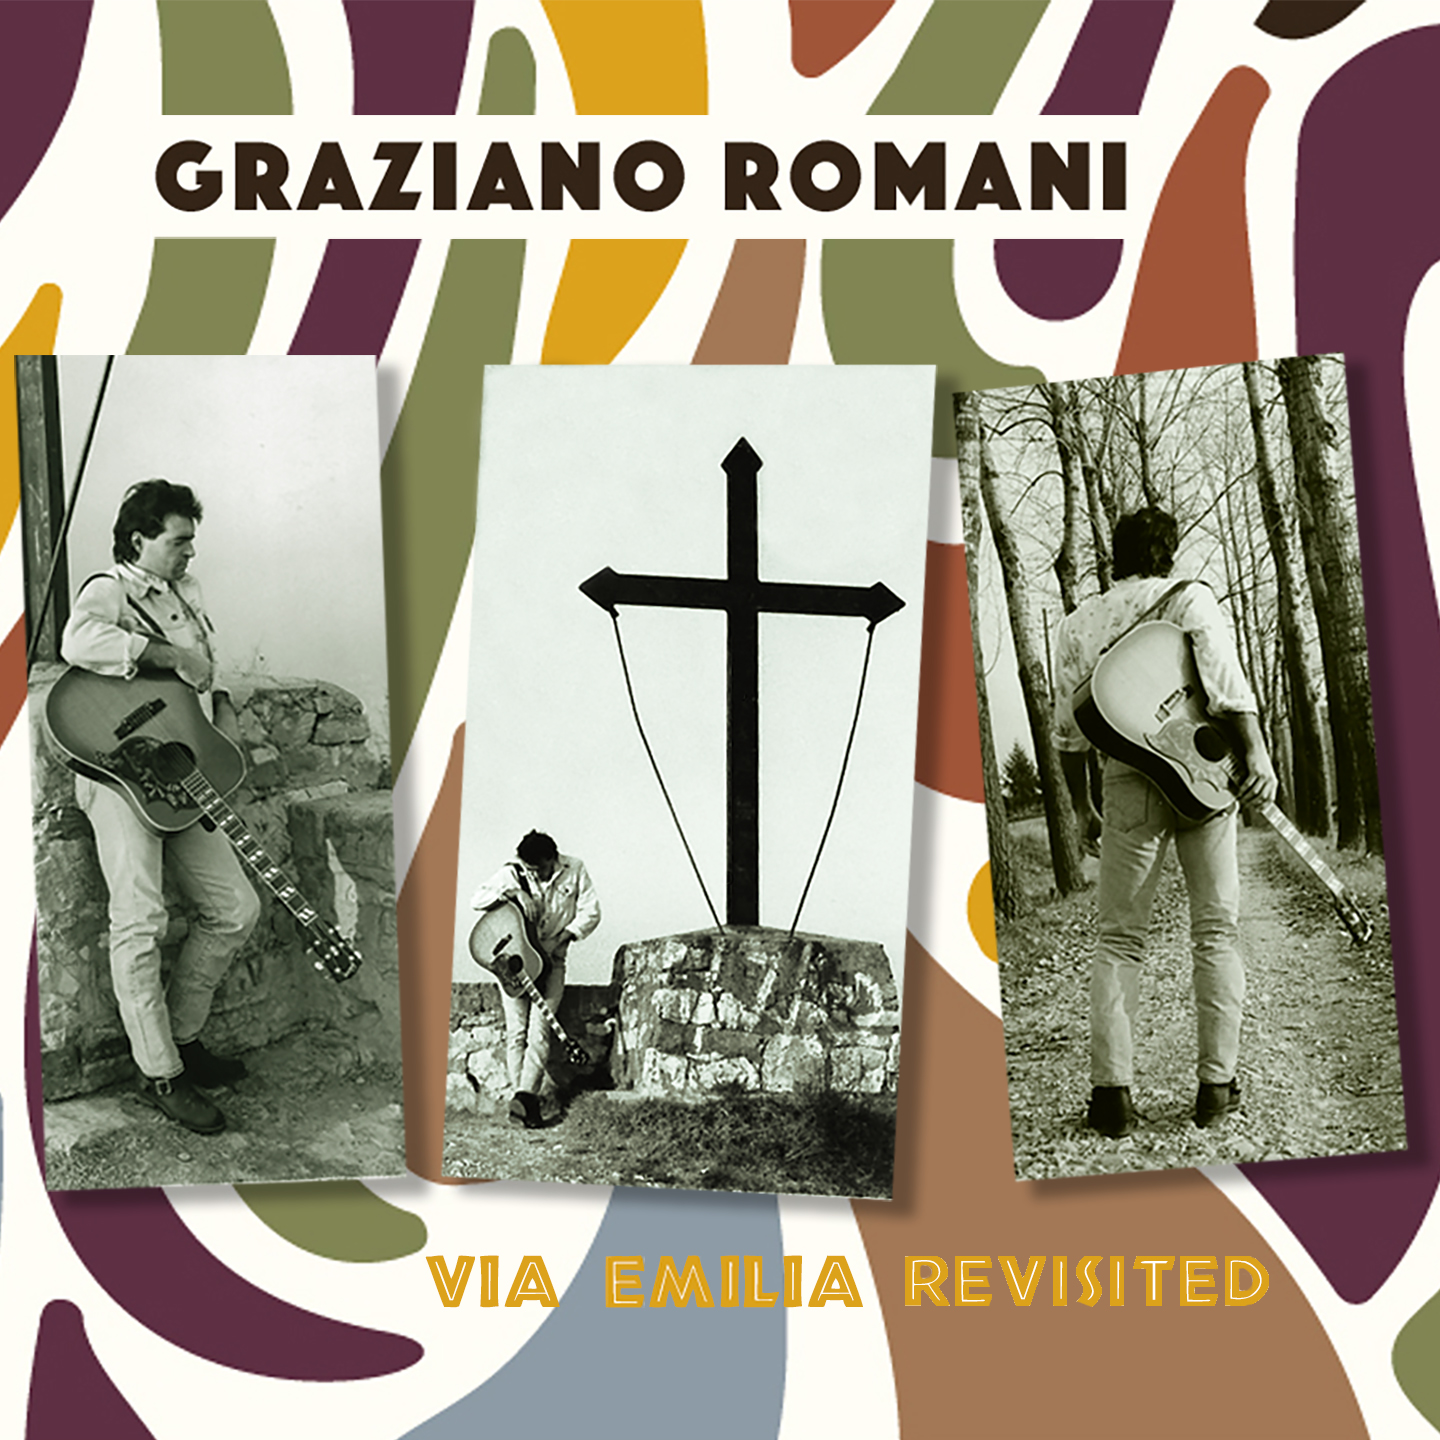 Graziano Romani - Cover EP Via Emilia Revisited